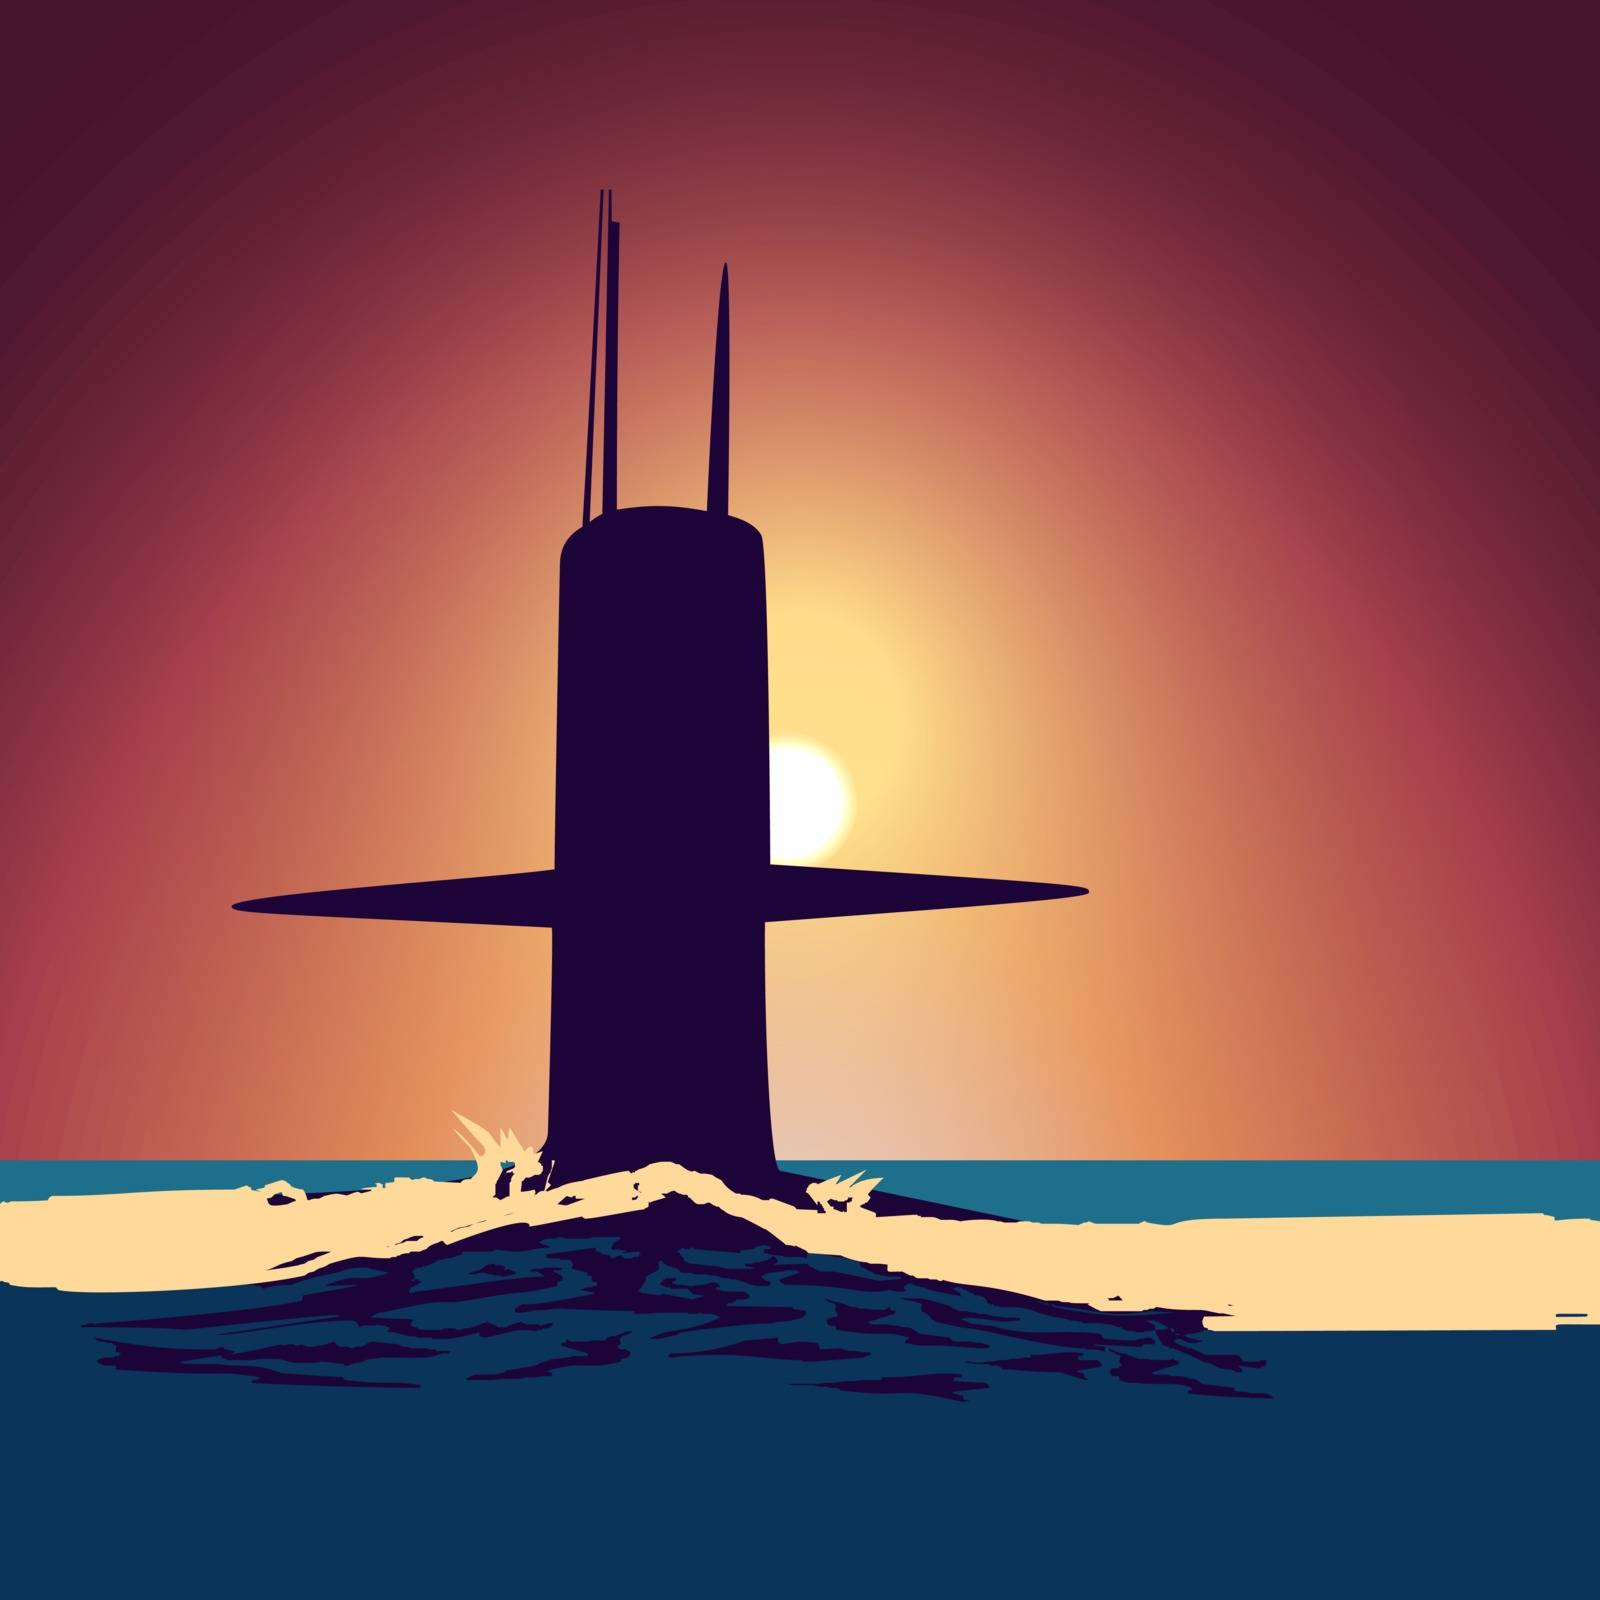 Military submarine silhouette by Zhukow